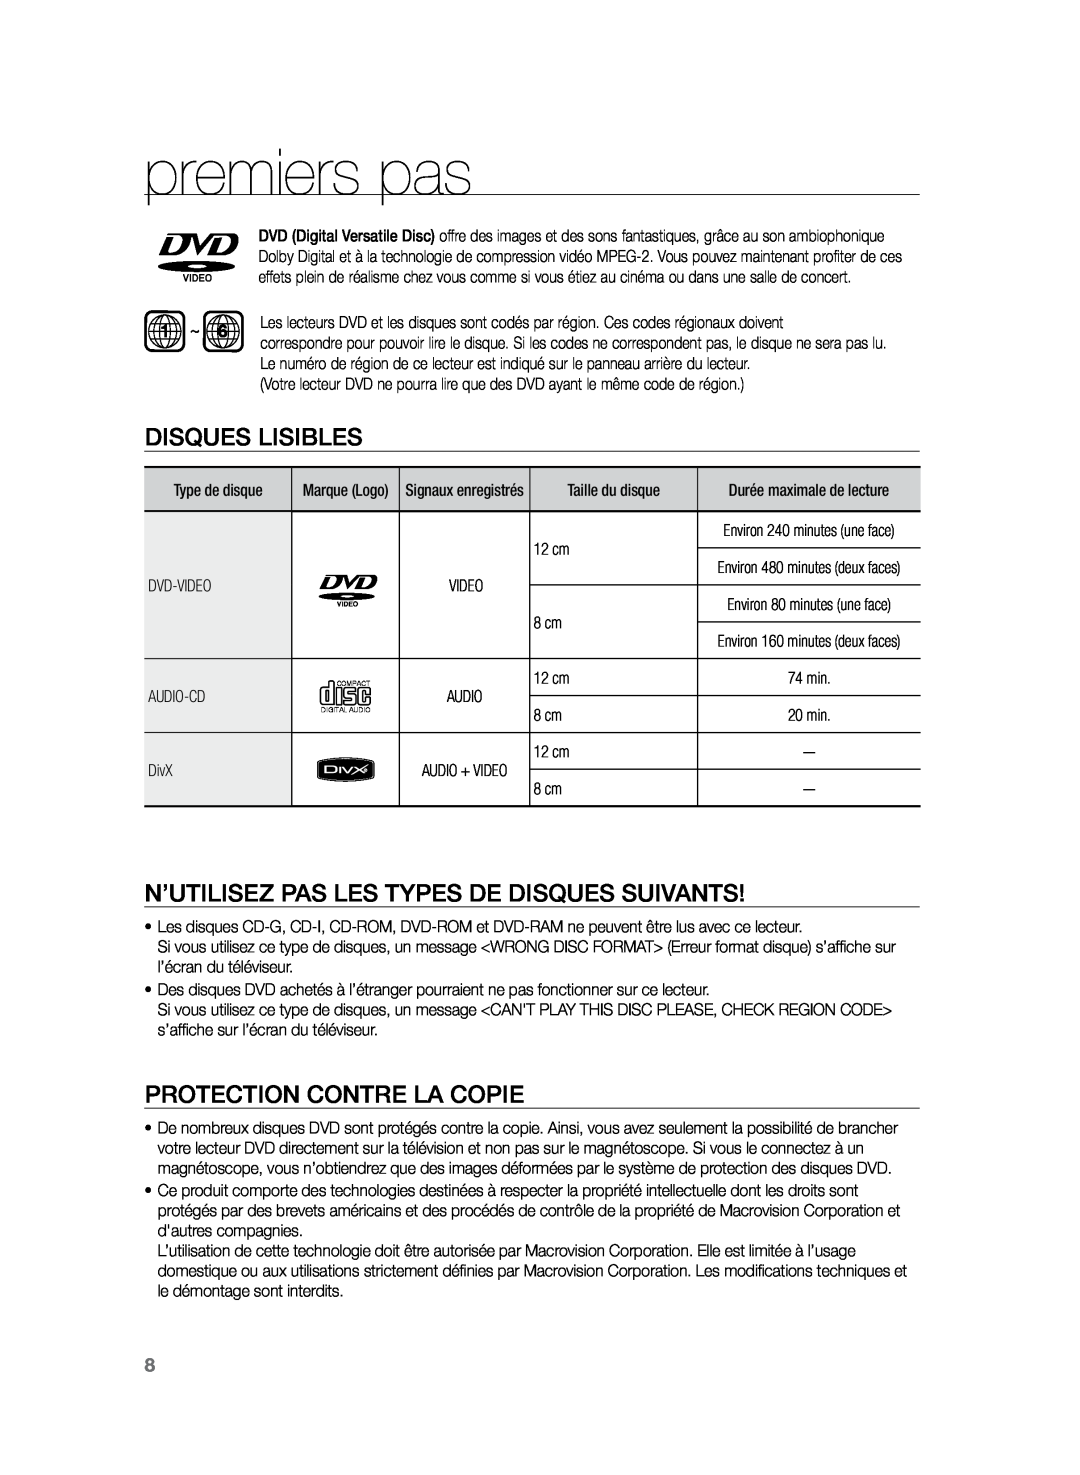 Samsung HT-TZ222R/XEF, HT-Z220R/XEF manual premiers pas, Disques lisibles, N’utilisez pas les types de disques suivants 